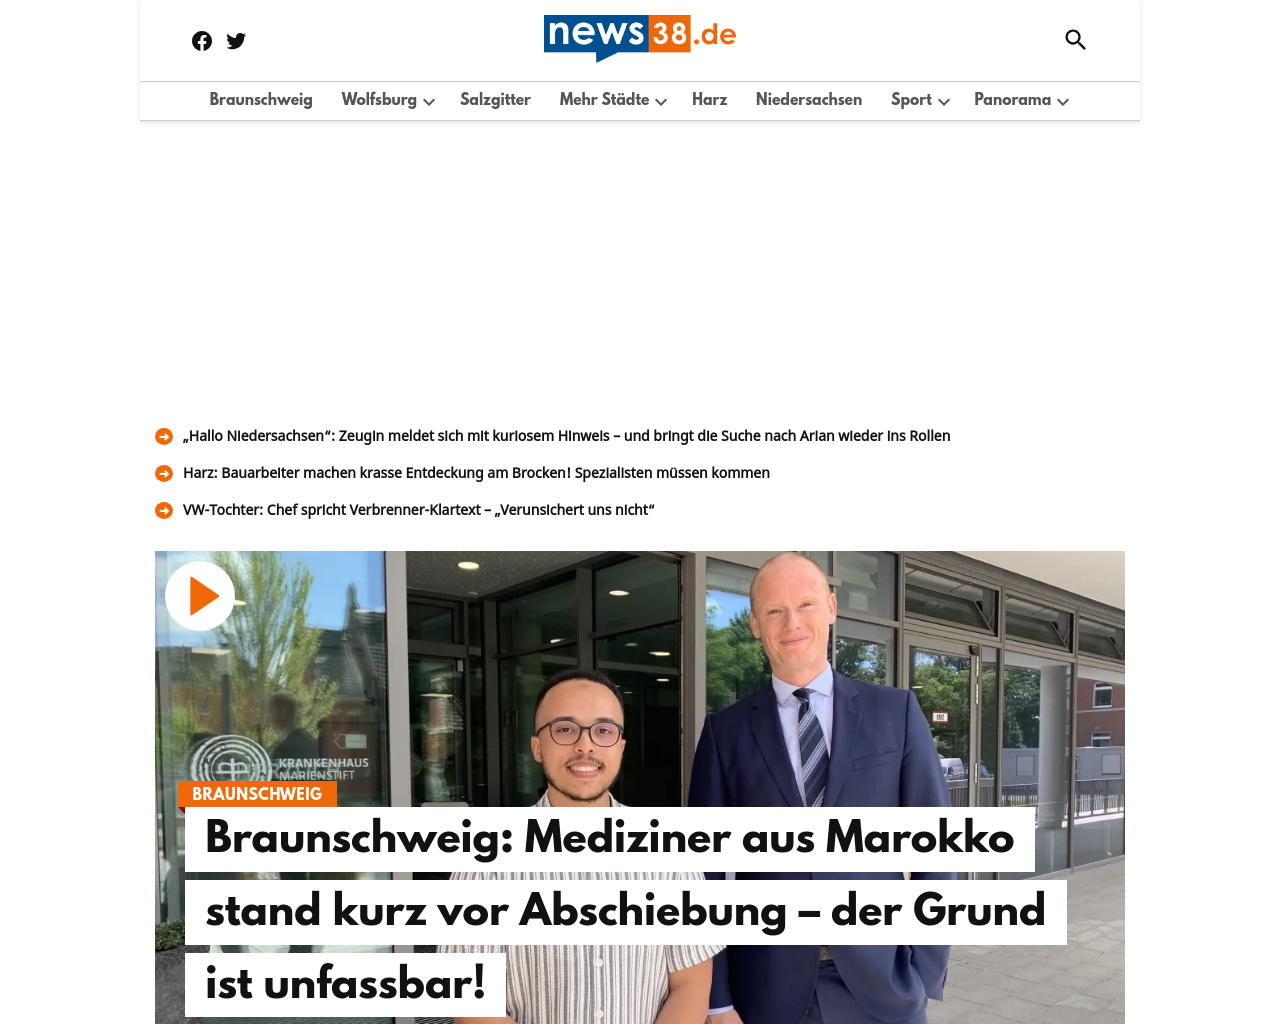 news38.de